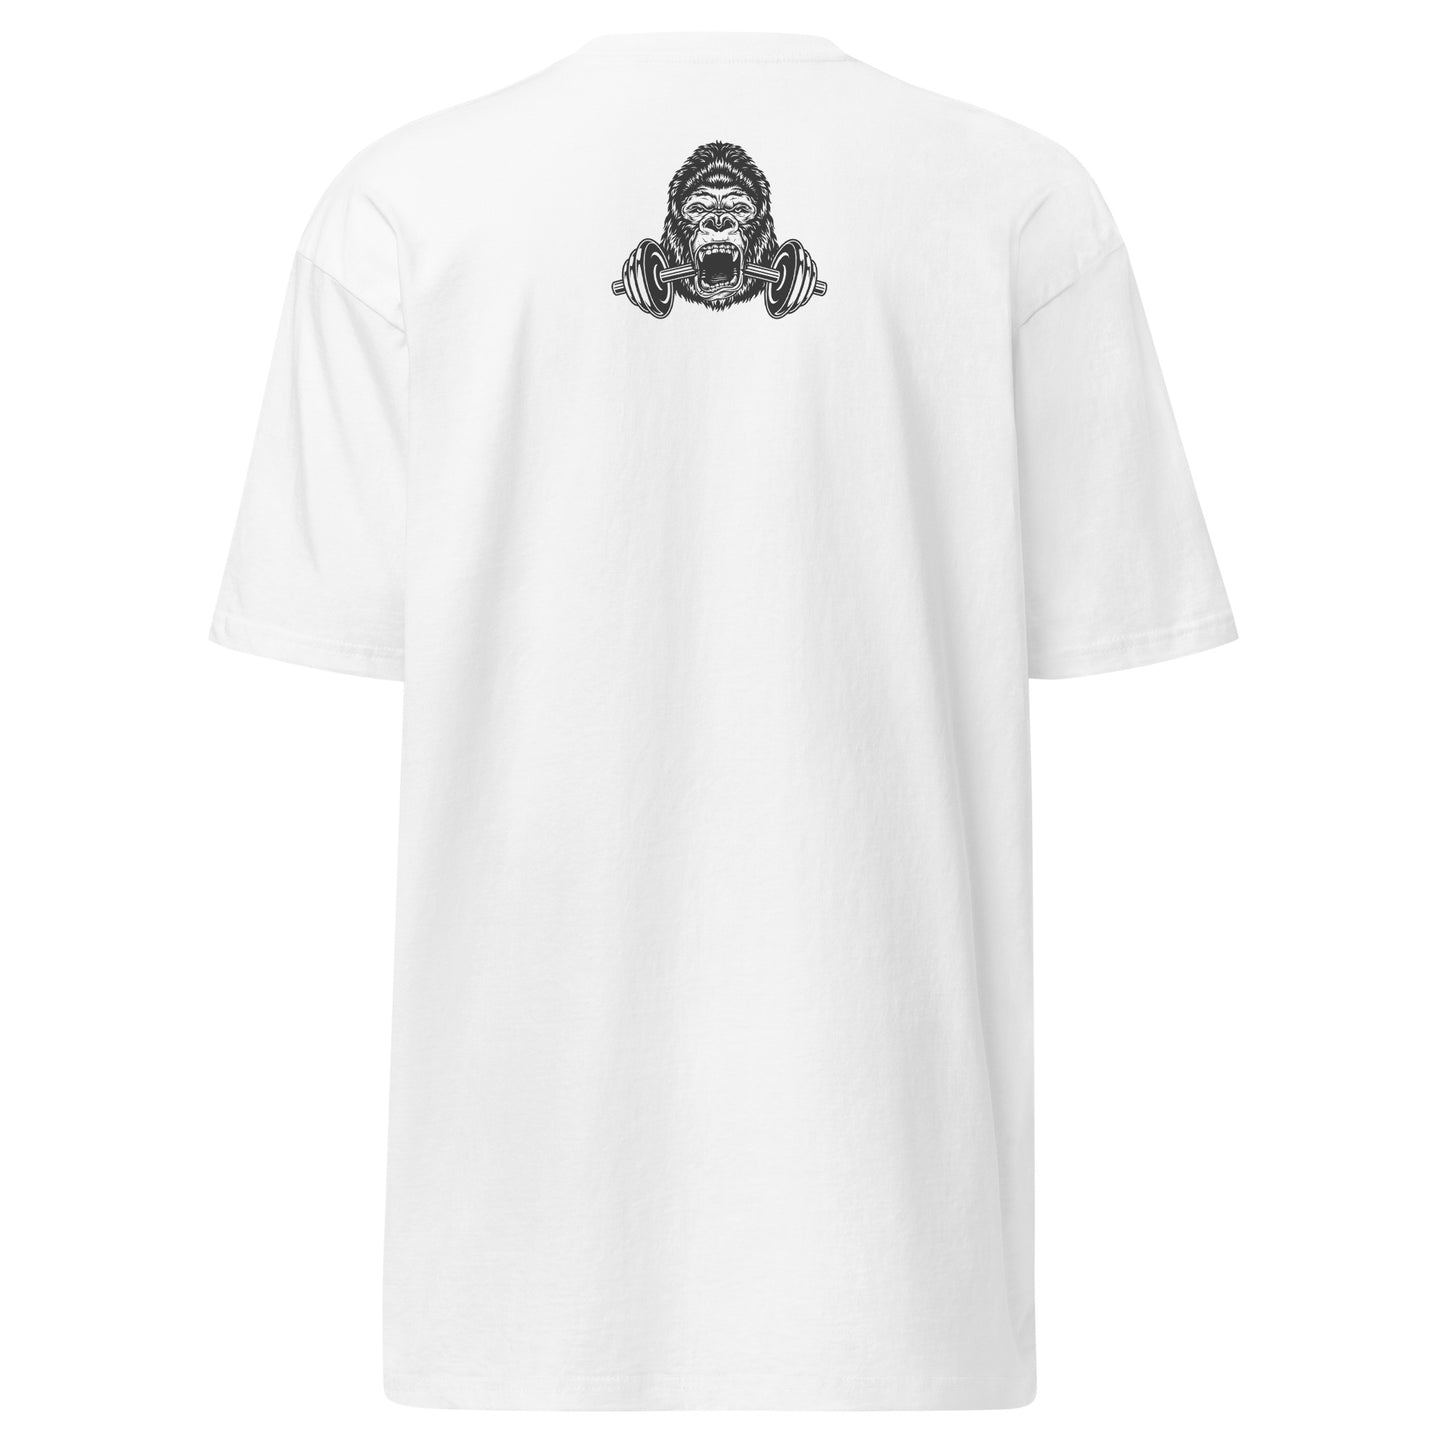 Titan Genetix - Titan Gorilla Men’s Premium Heavyweight T-Shirt